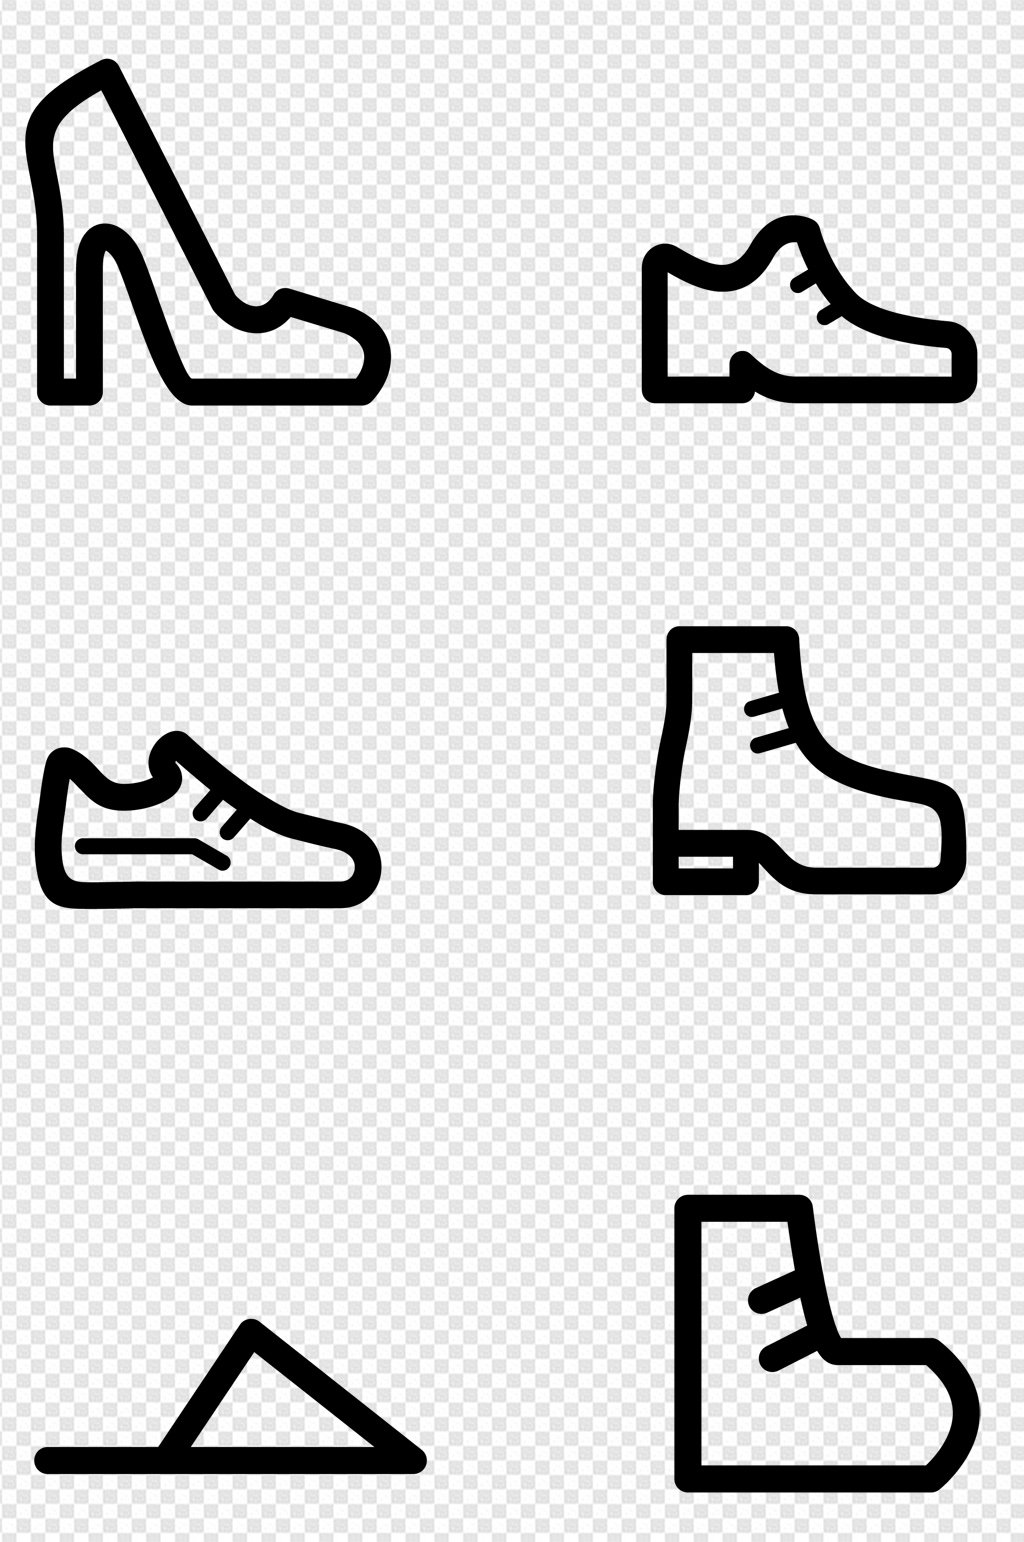 鞋子的变形创意图形图片